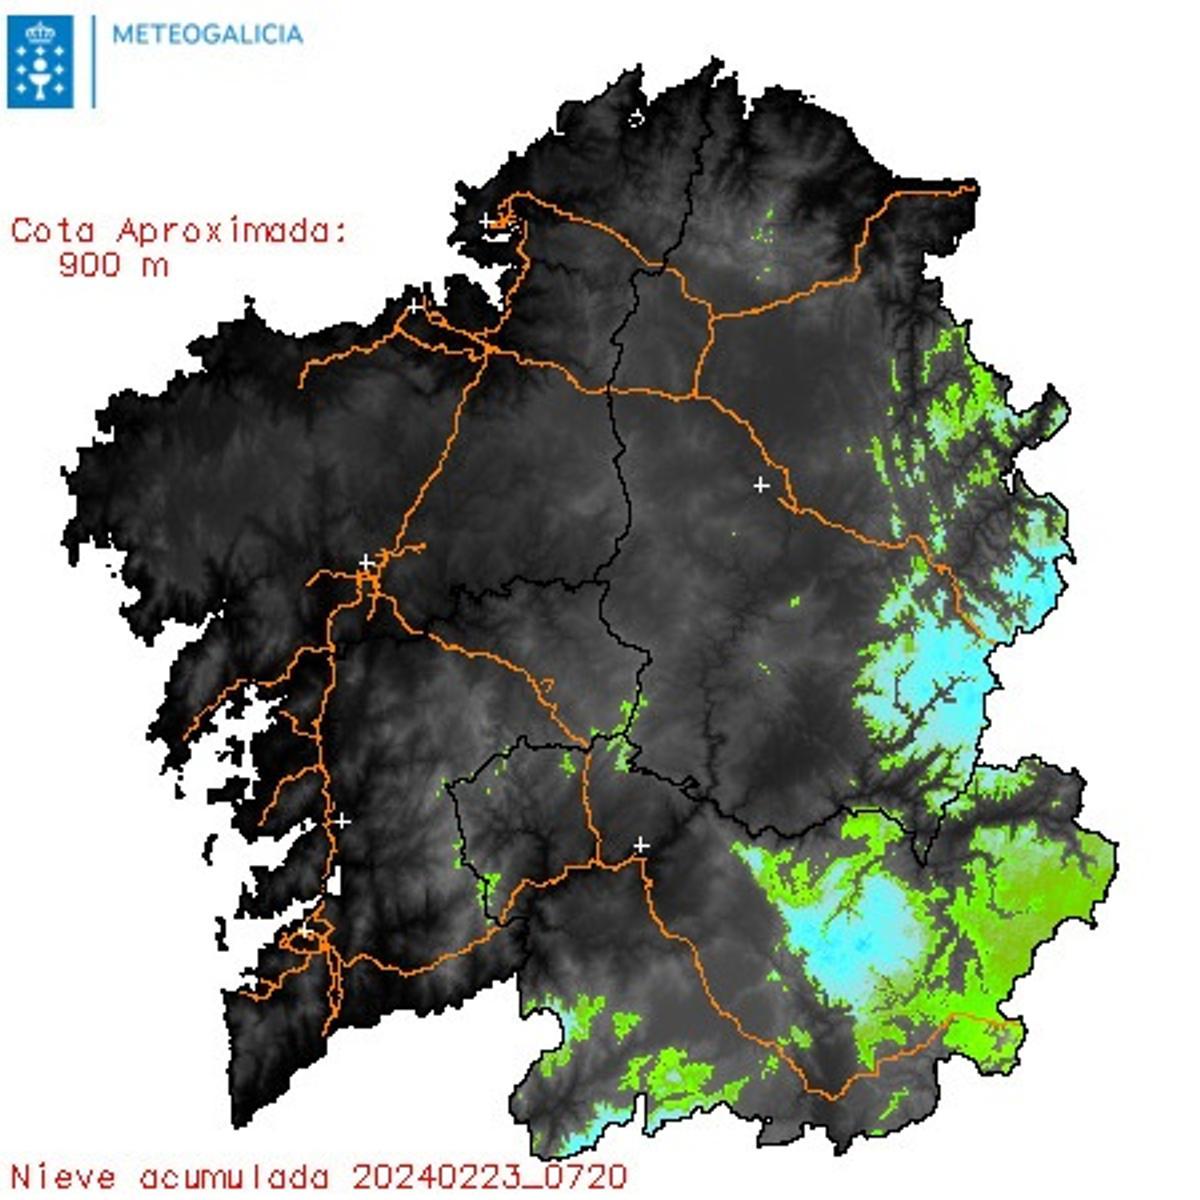 Nieve acumulada en Galicia desde la medianoche hasta las 8:30